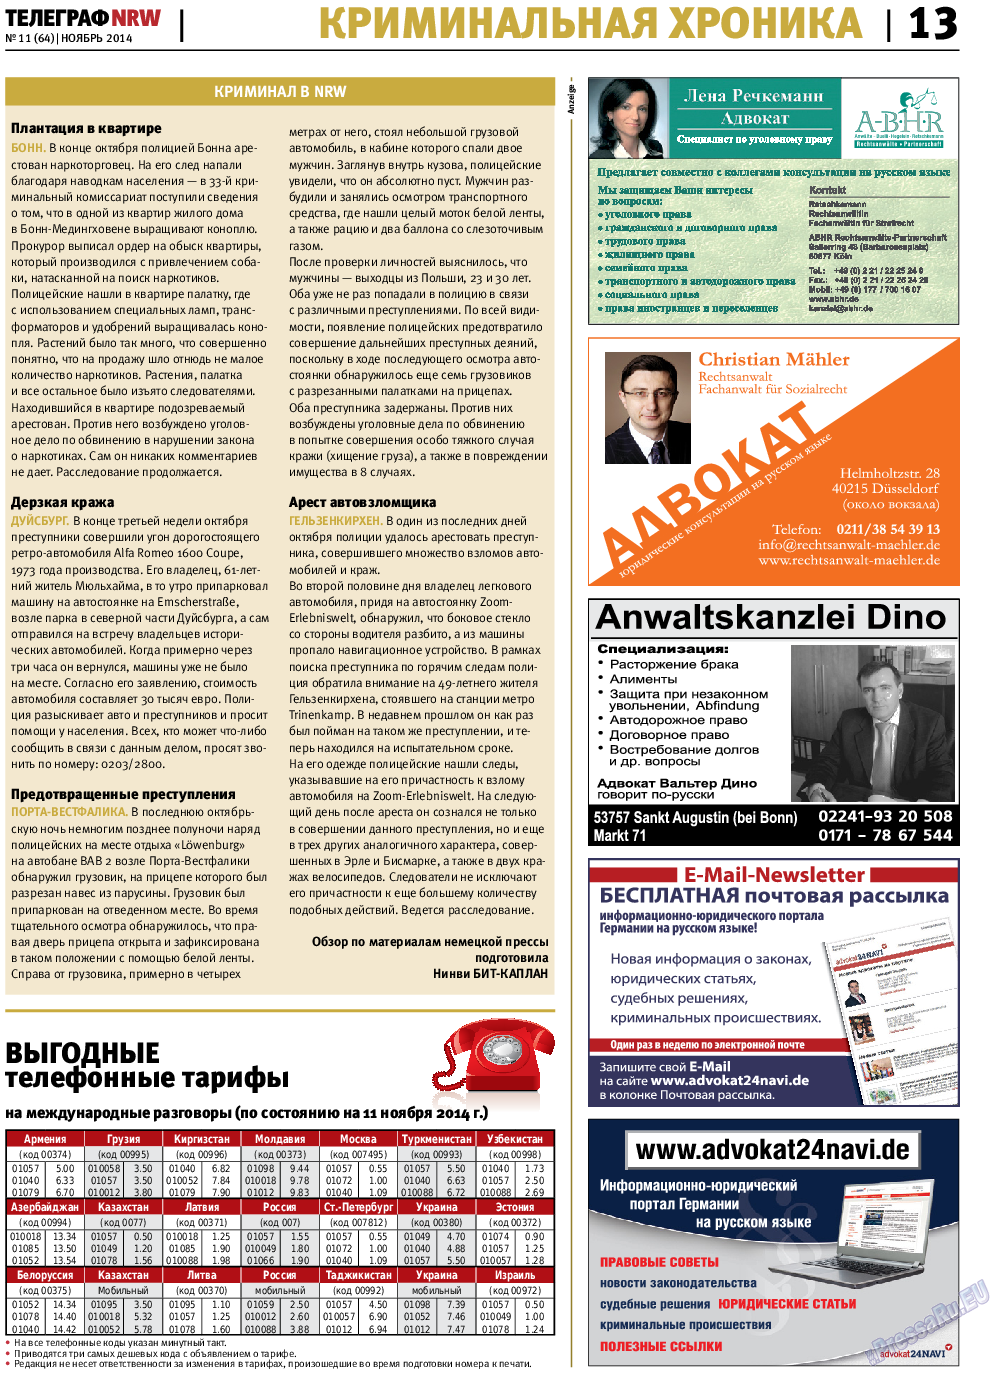 Телеграф NRW (газета). 2014 год, номер 11, стр. 13